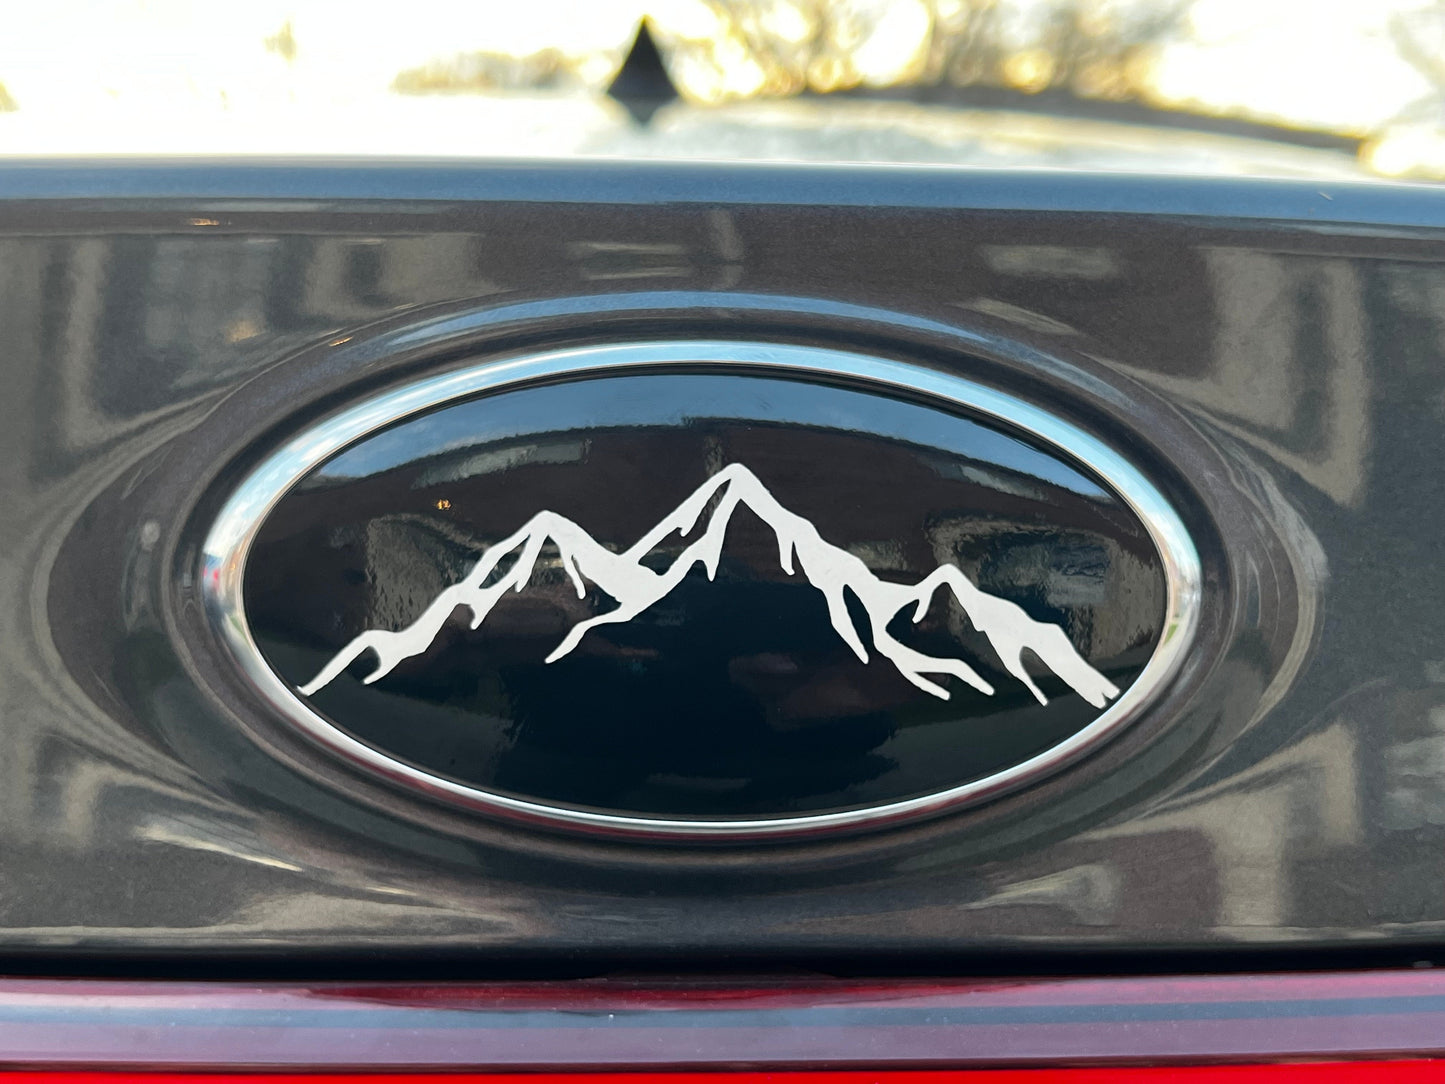 2018-2021 Crosstrek Emblem Overlay DECALS Compatible with Subaru Crosstrek | Front & Rear Set